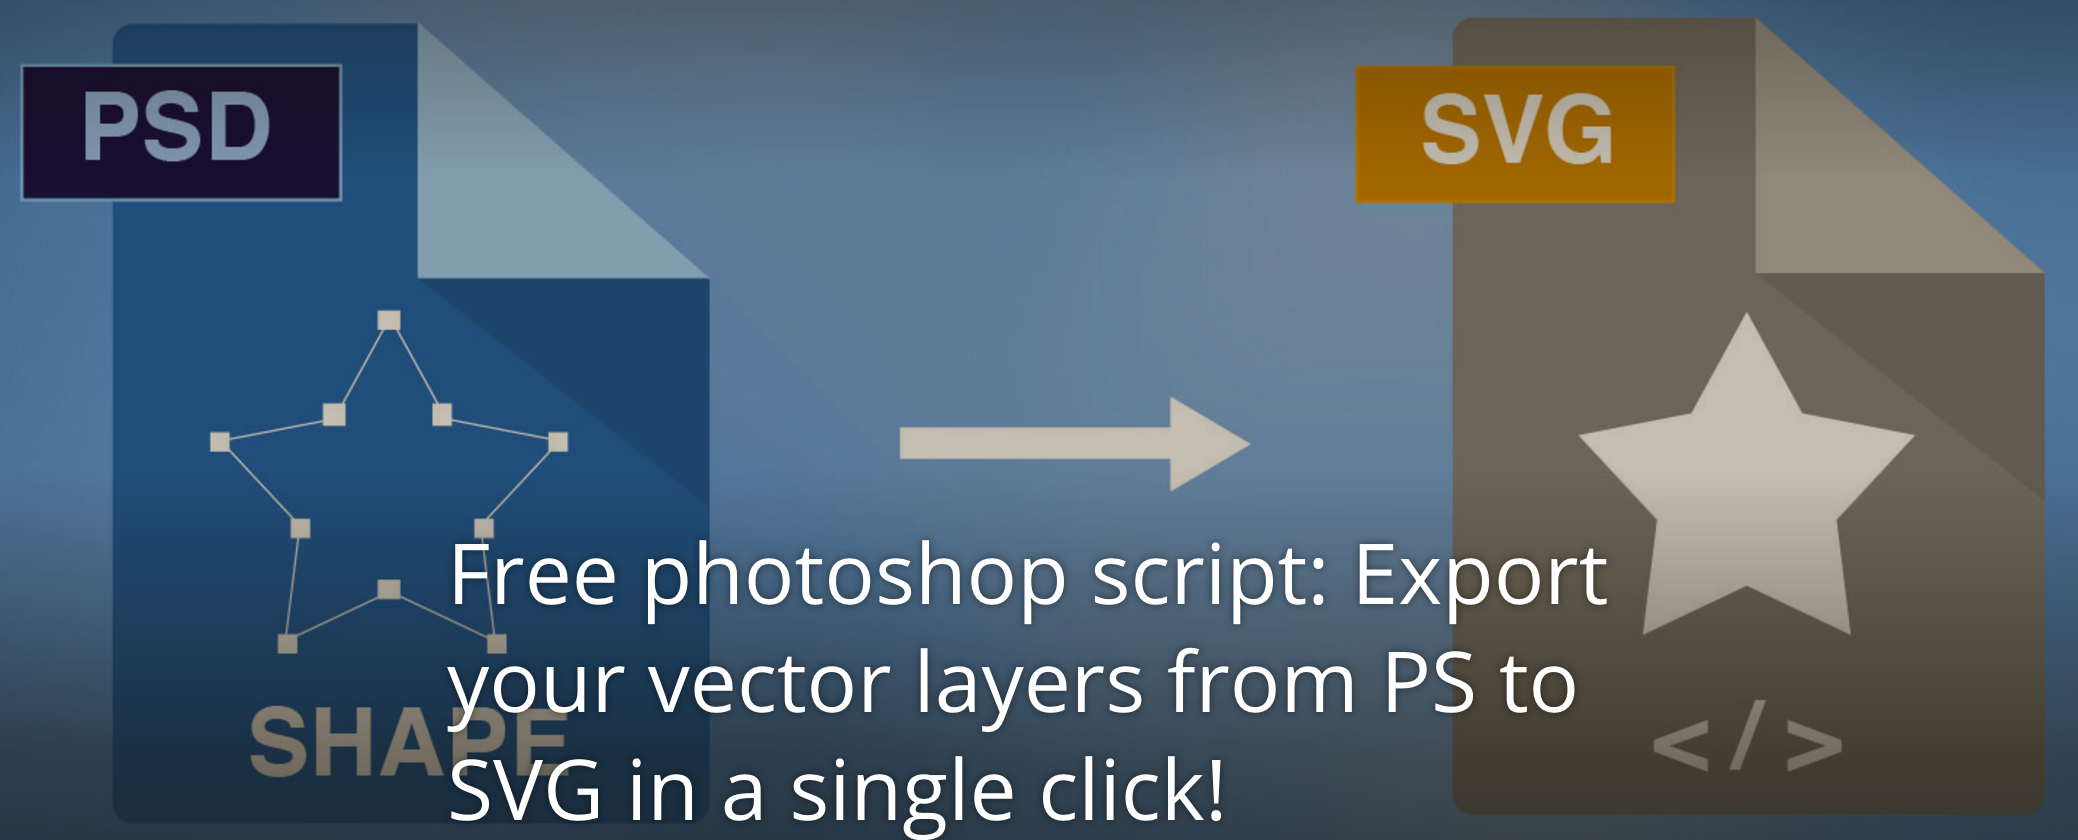 使用PSD to SVG增加便利